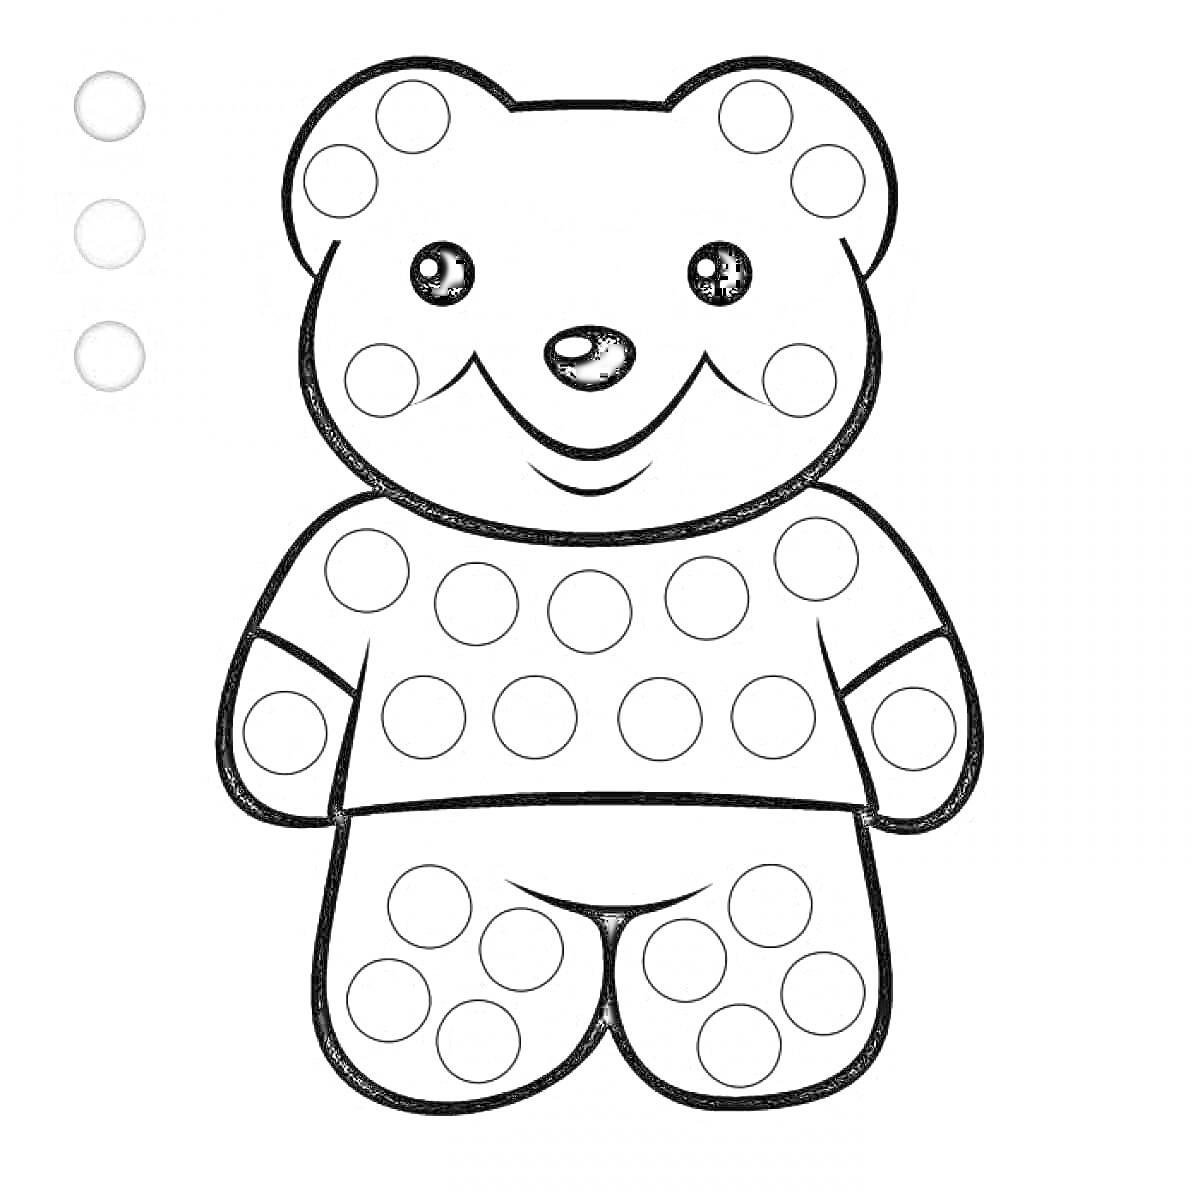 Раскраска Медвежонок с круглыми шаблонами для пальчикового рисования